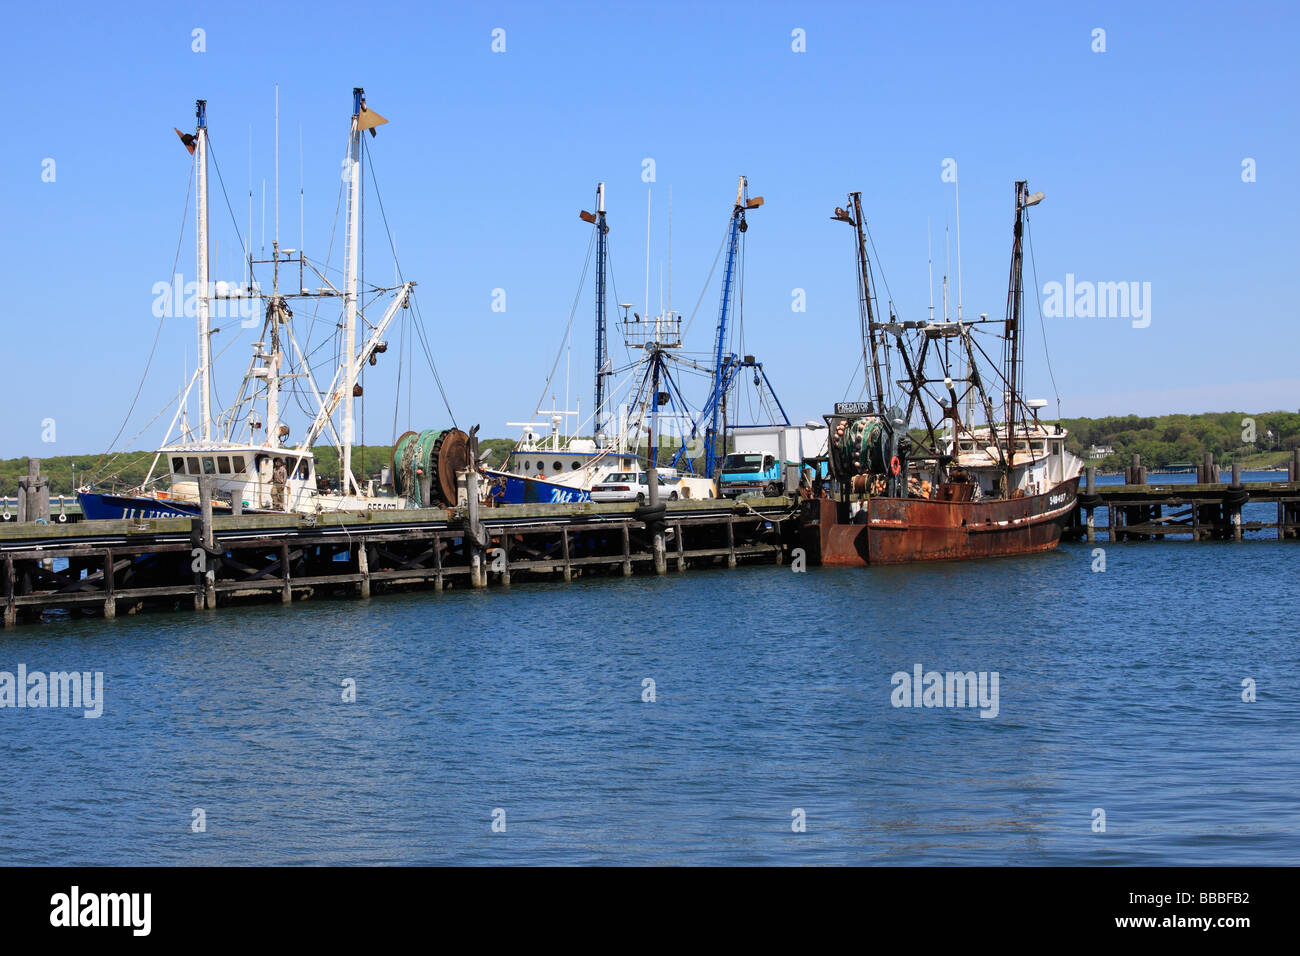 Commerciale barche da pesca, Greenport, costa nord della contea di Suffolk Long Island, NY USA Foto Stock